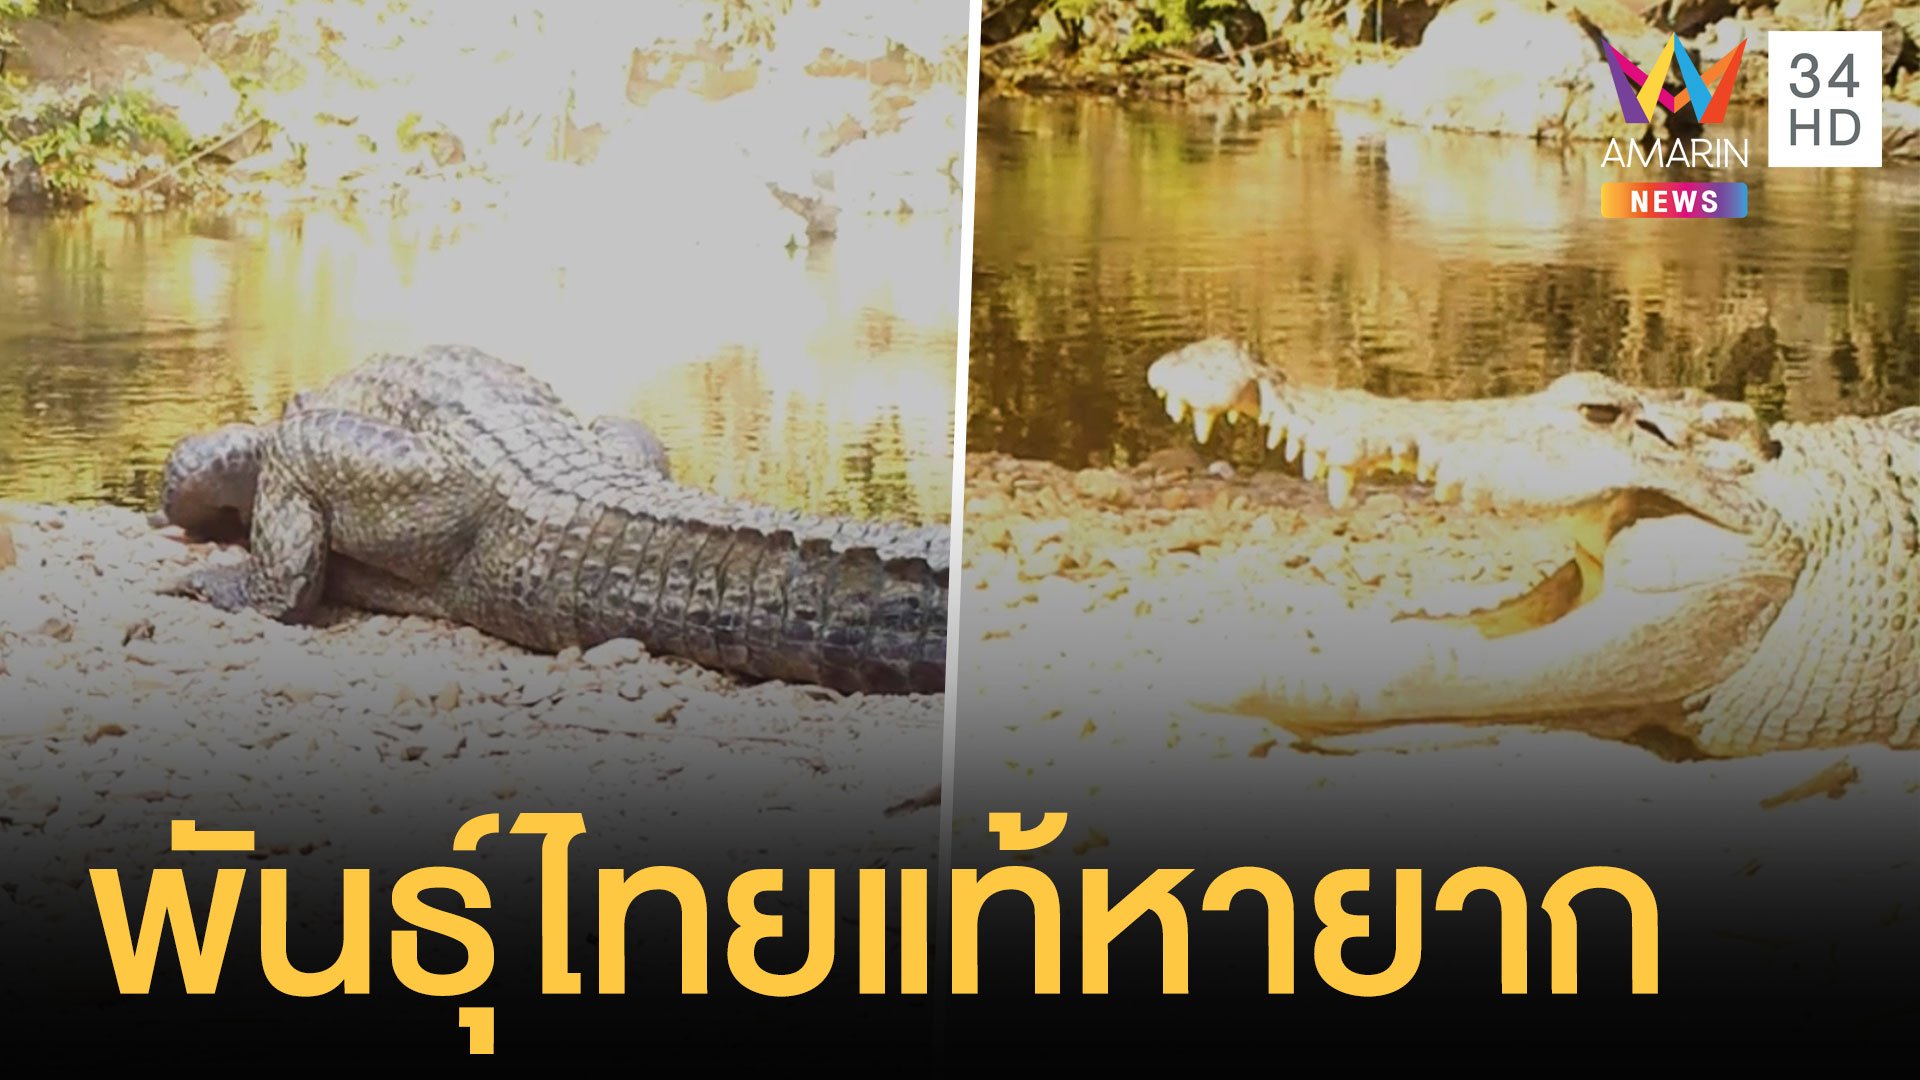 เจอจระเข้สายพันธุ์ไทยหายากอาบแดดในป่าแก่งกระจาน | ข่าวอรุณอมรินทร์ | 24 ม.ค. 64 | AMARIN TVHD34